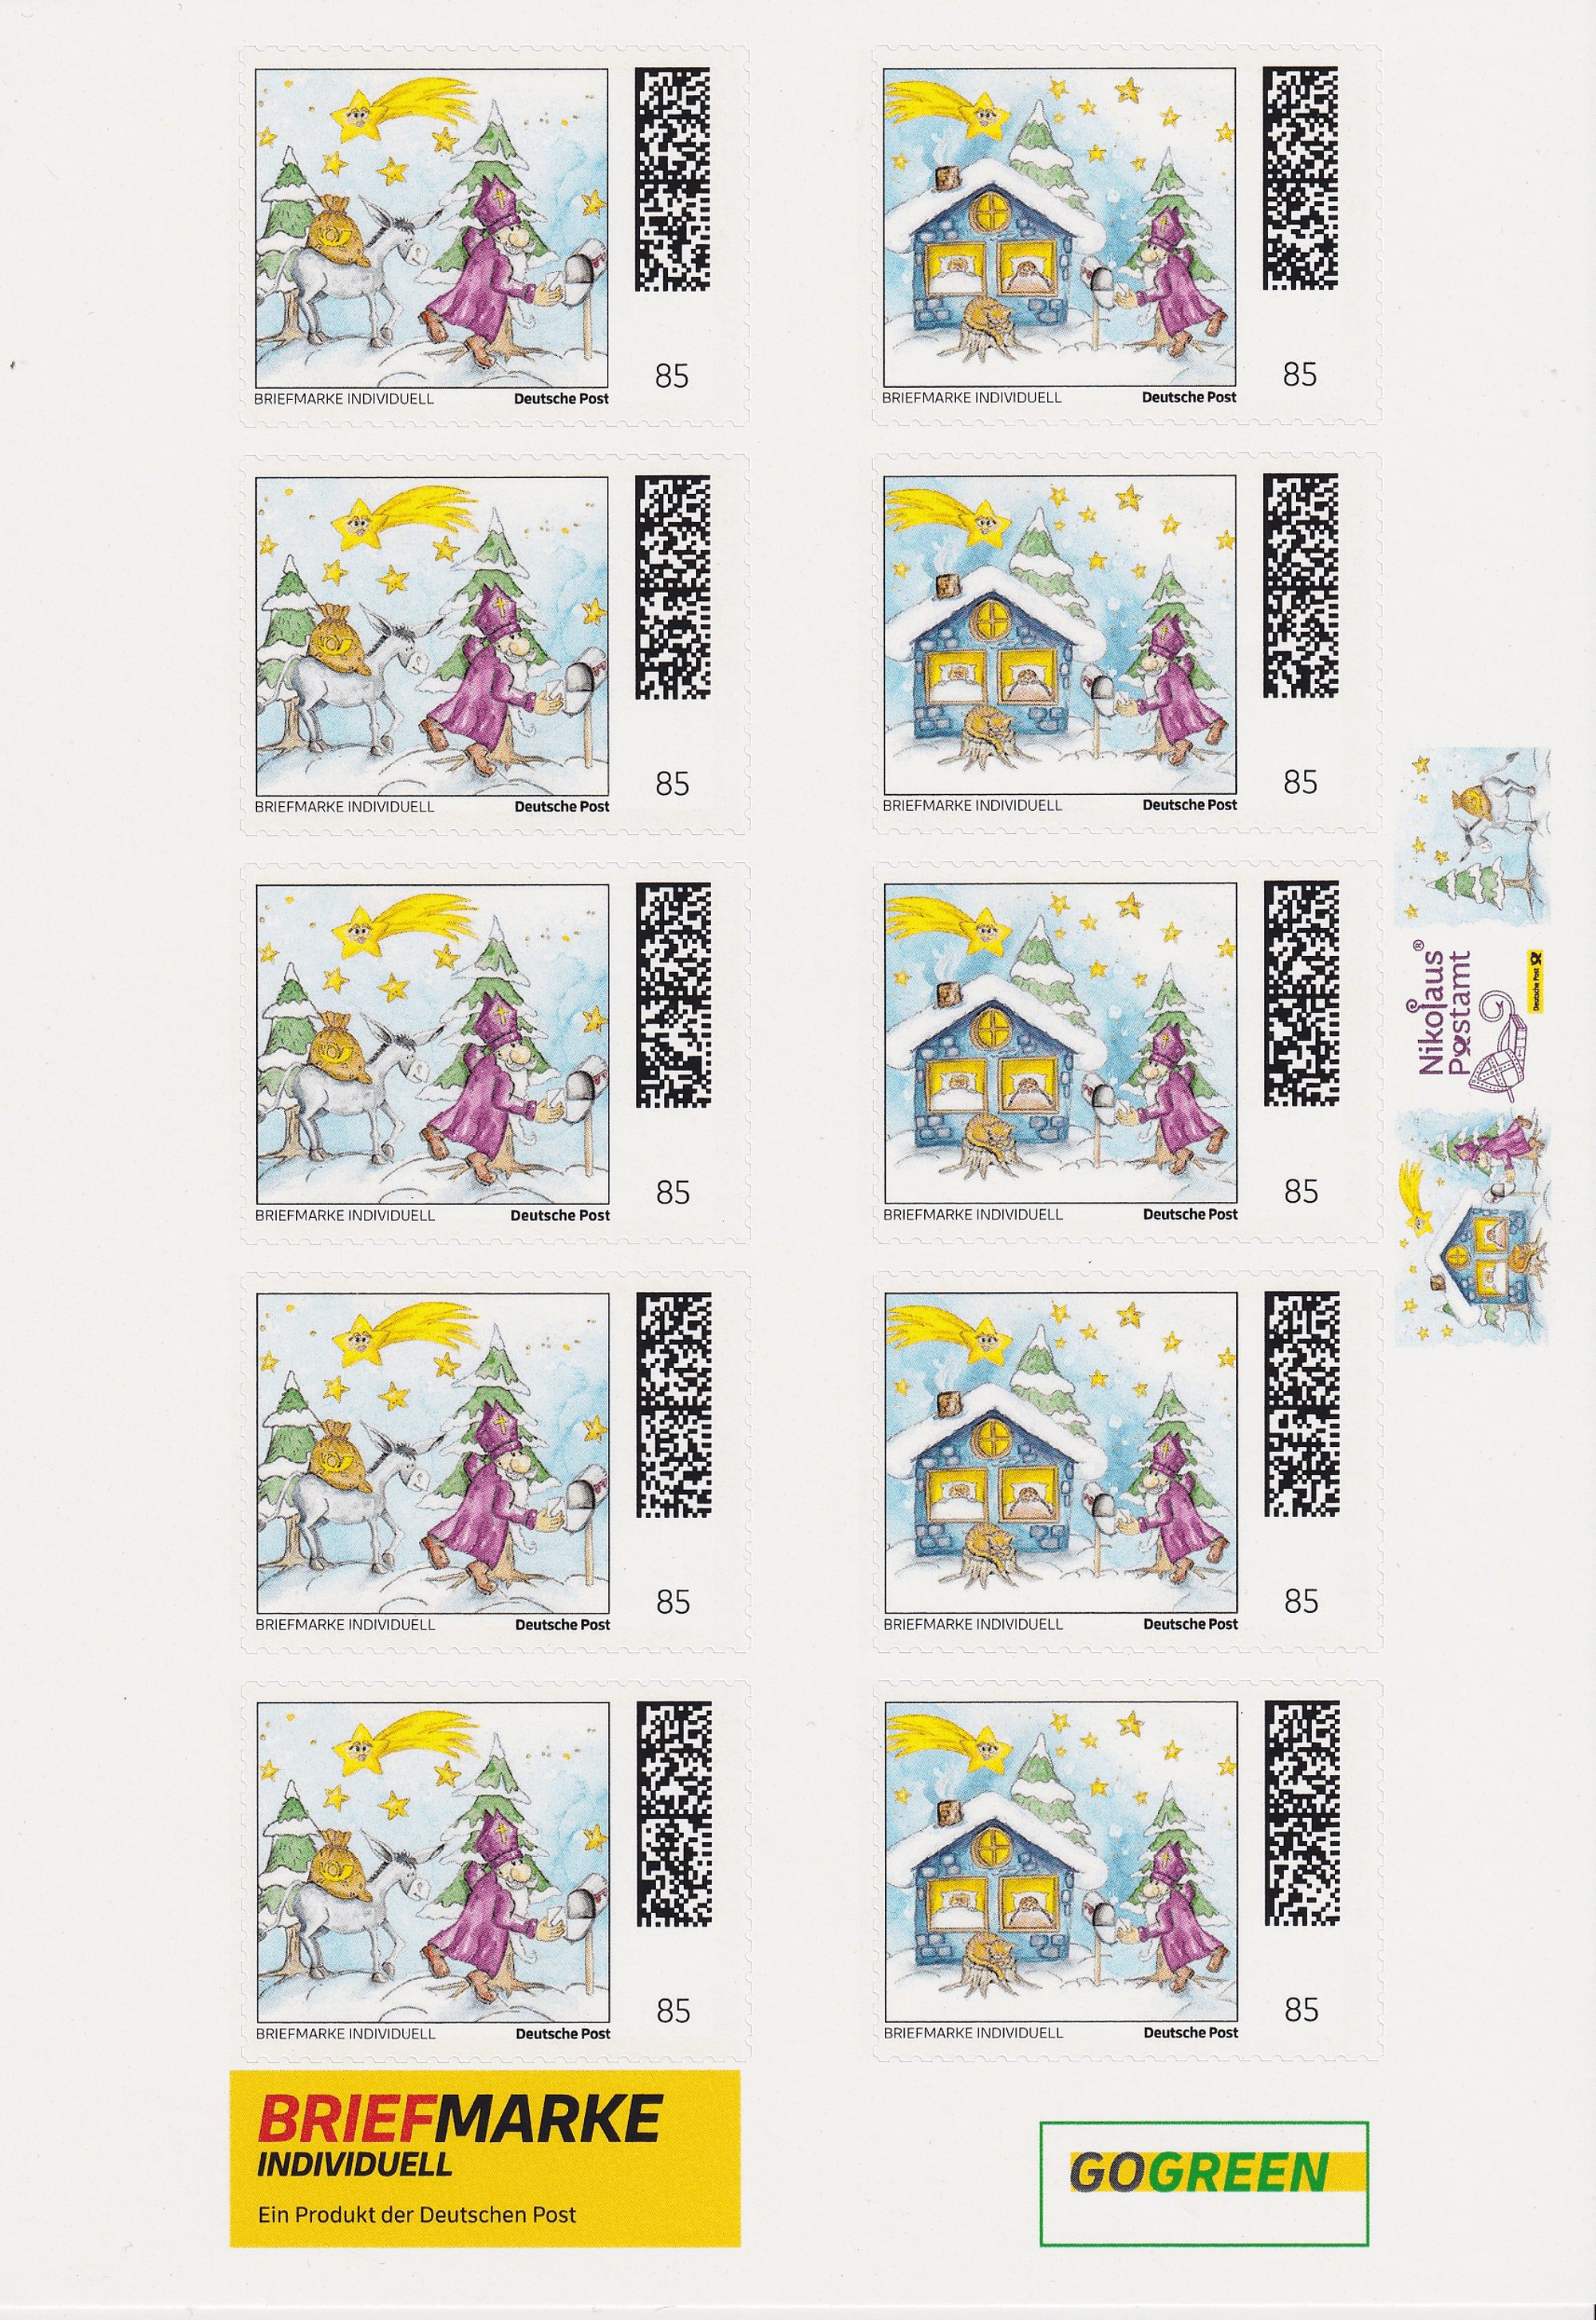 10 Nikolaus Briefmarken Individuell - Nikolausesel + Kindertraum - auf DIN A5 Schmuckbogen